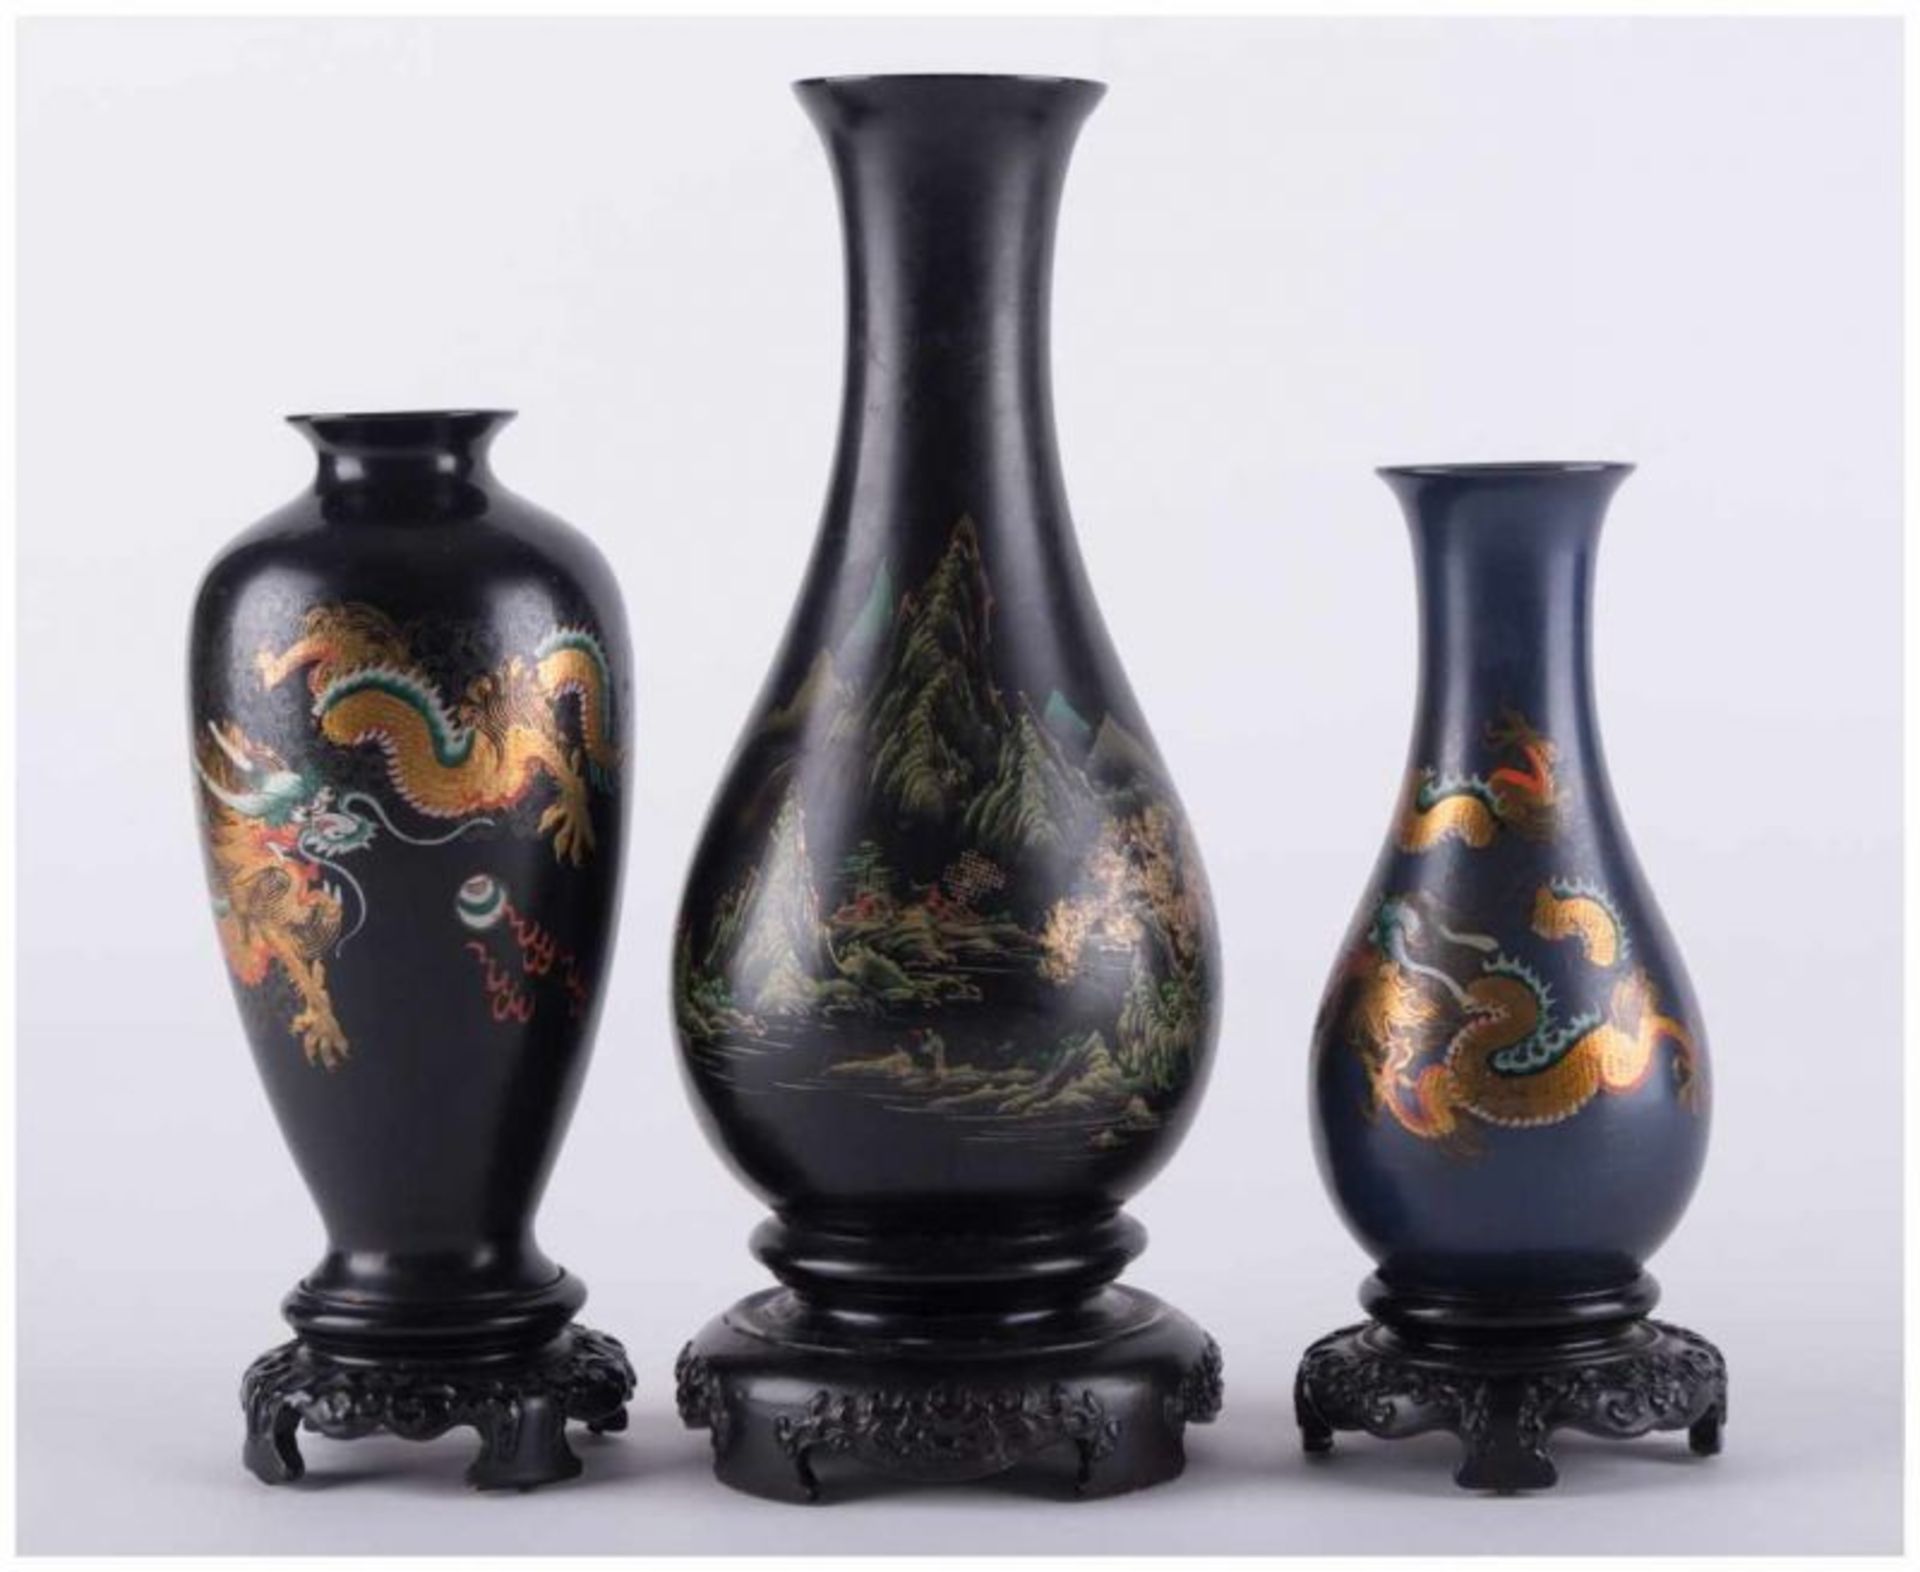 Konvolut Lackvasen China 19./20. Jhd. / Group of lacquer vases, China 19th/20th [...] - Bild 2 aus 4